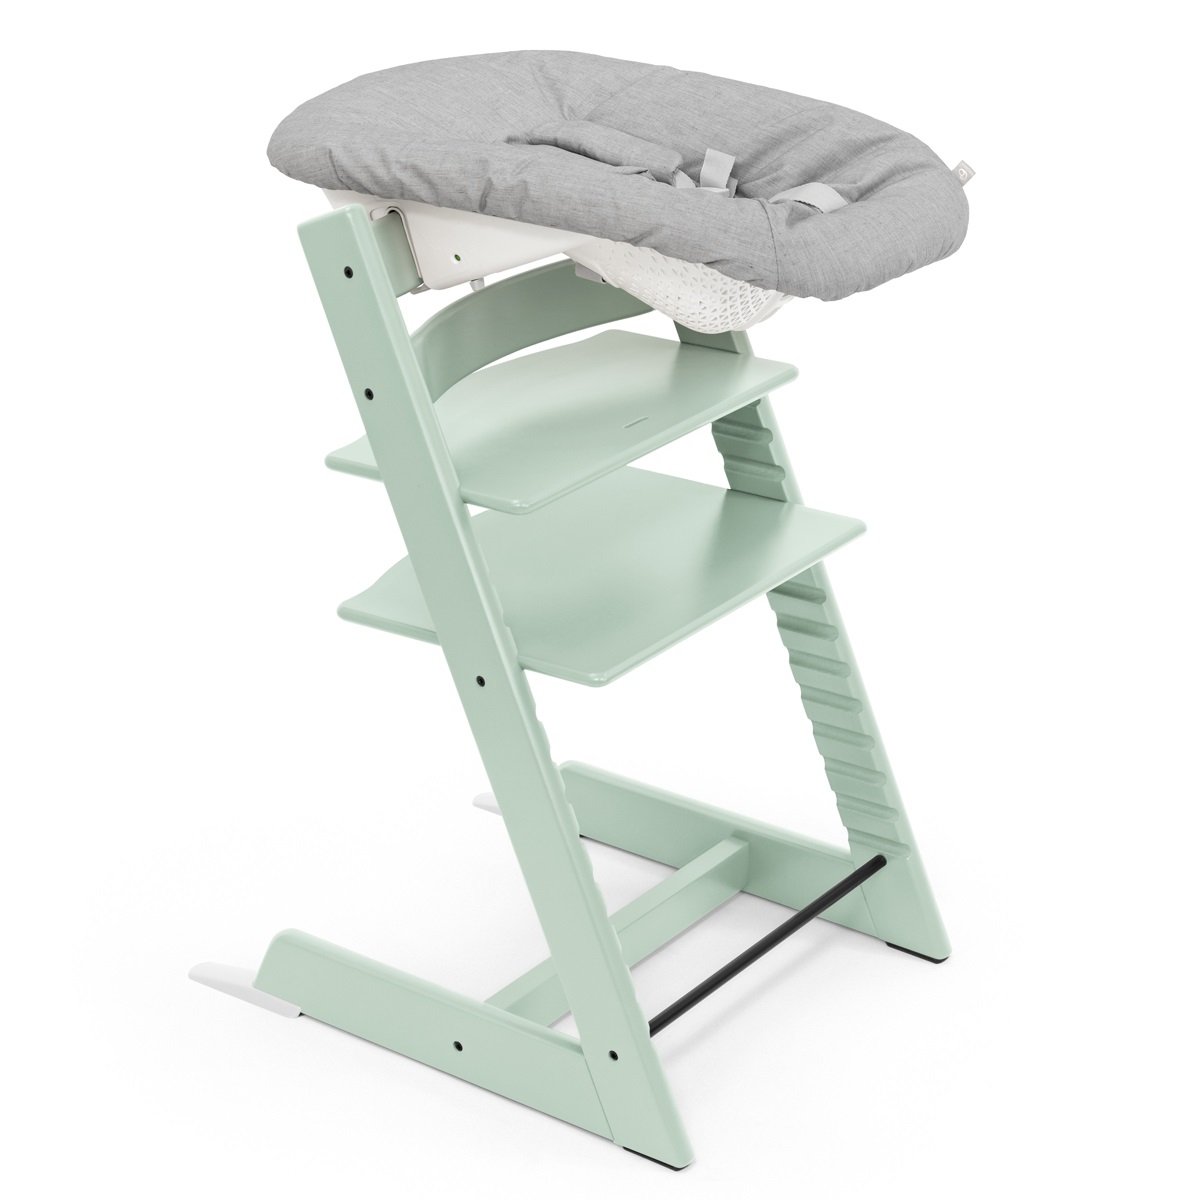 Набор Stokke Newborn Tripp Trapp Soft Mint: стульчик и кресло для новорожденных (k.100135.52) - фото 2